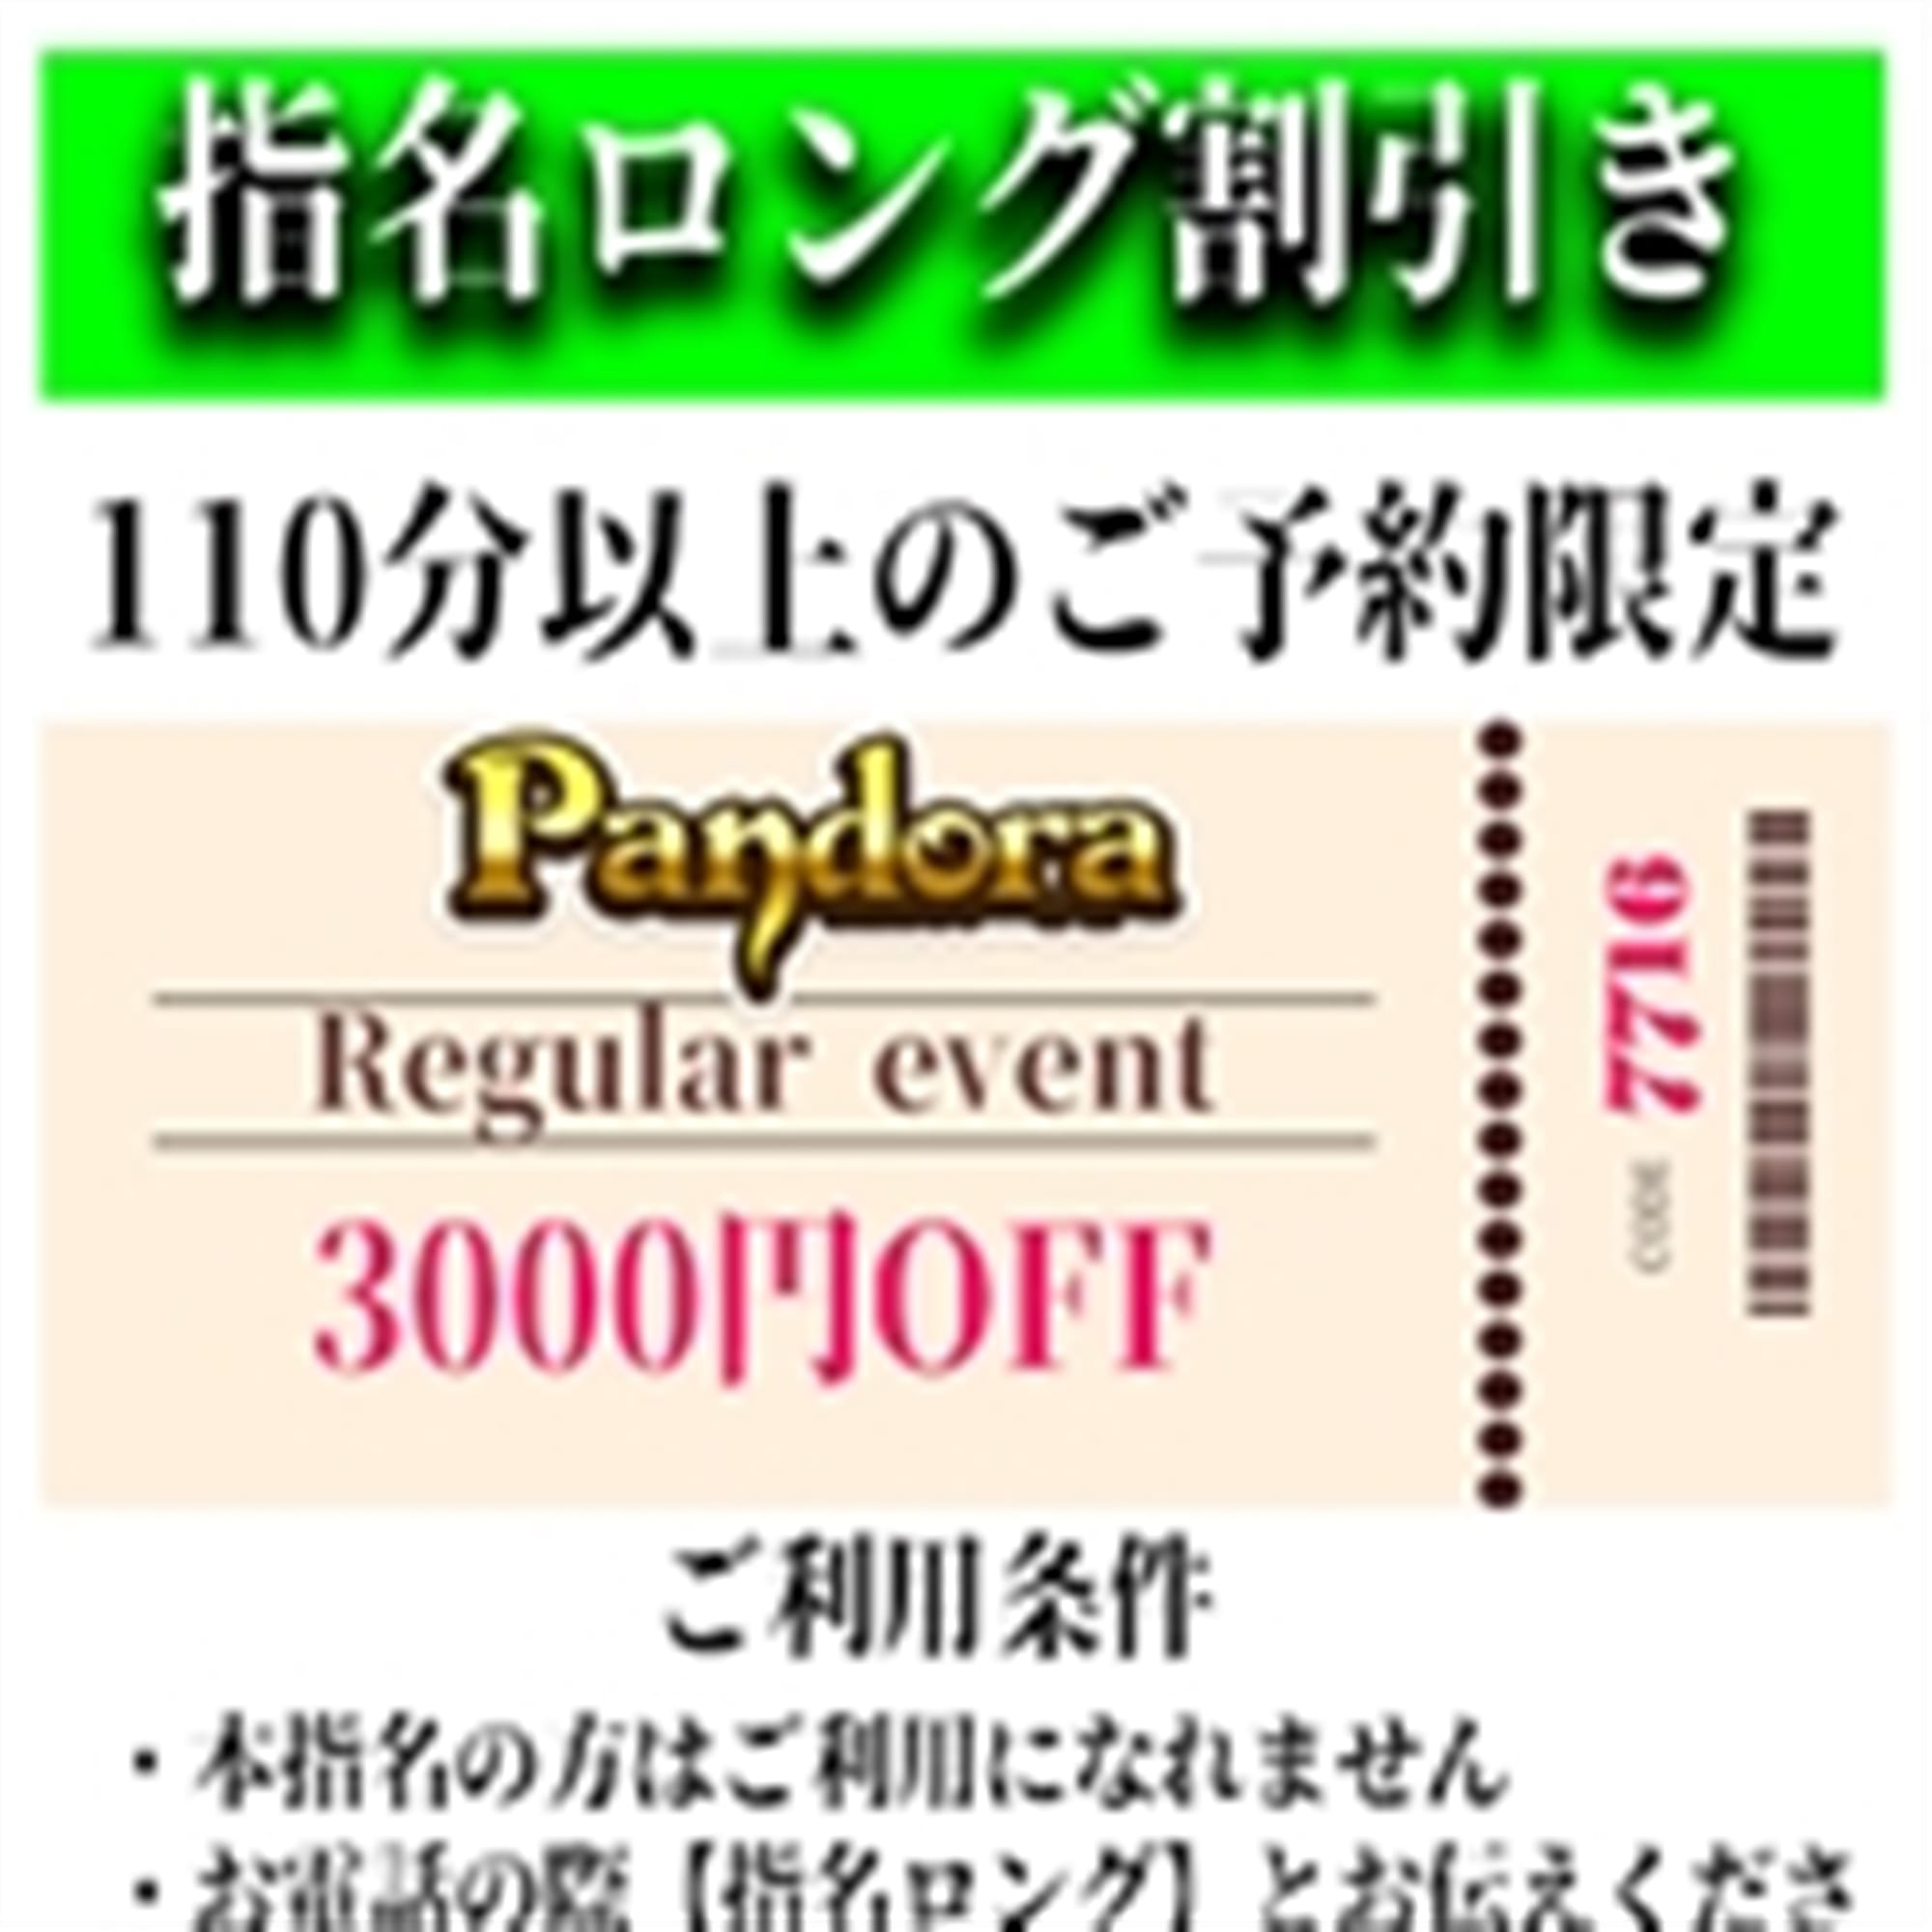 「ご指名のお客様も遊べるロングコース割引」04/26(金) 14:01 | Pandora(パンドラ)新潟のお得なニュース